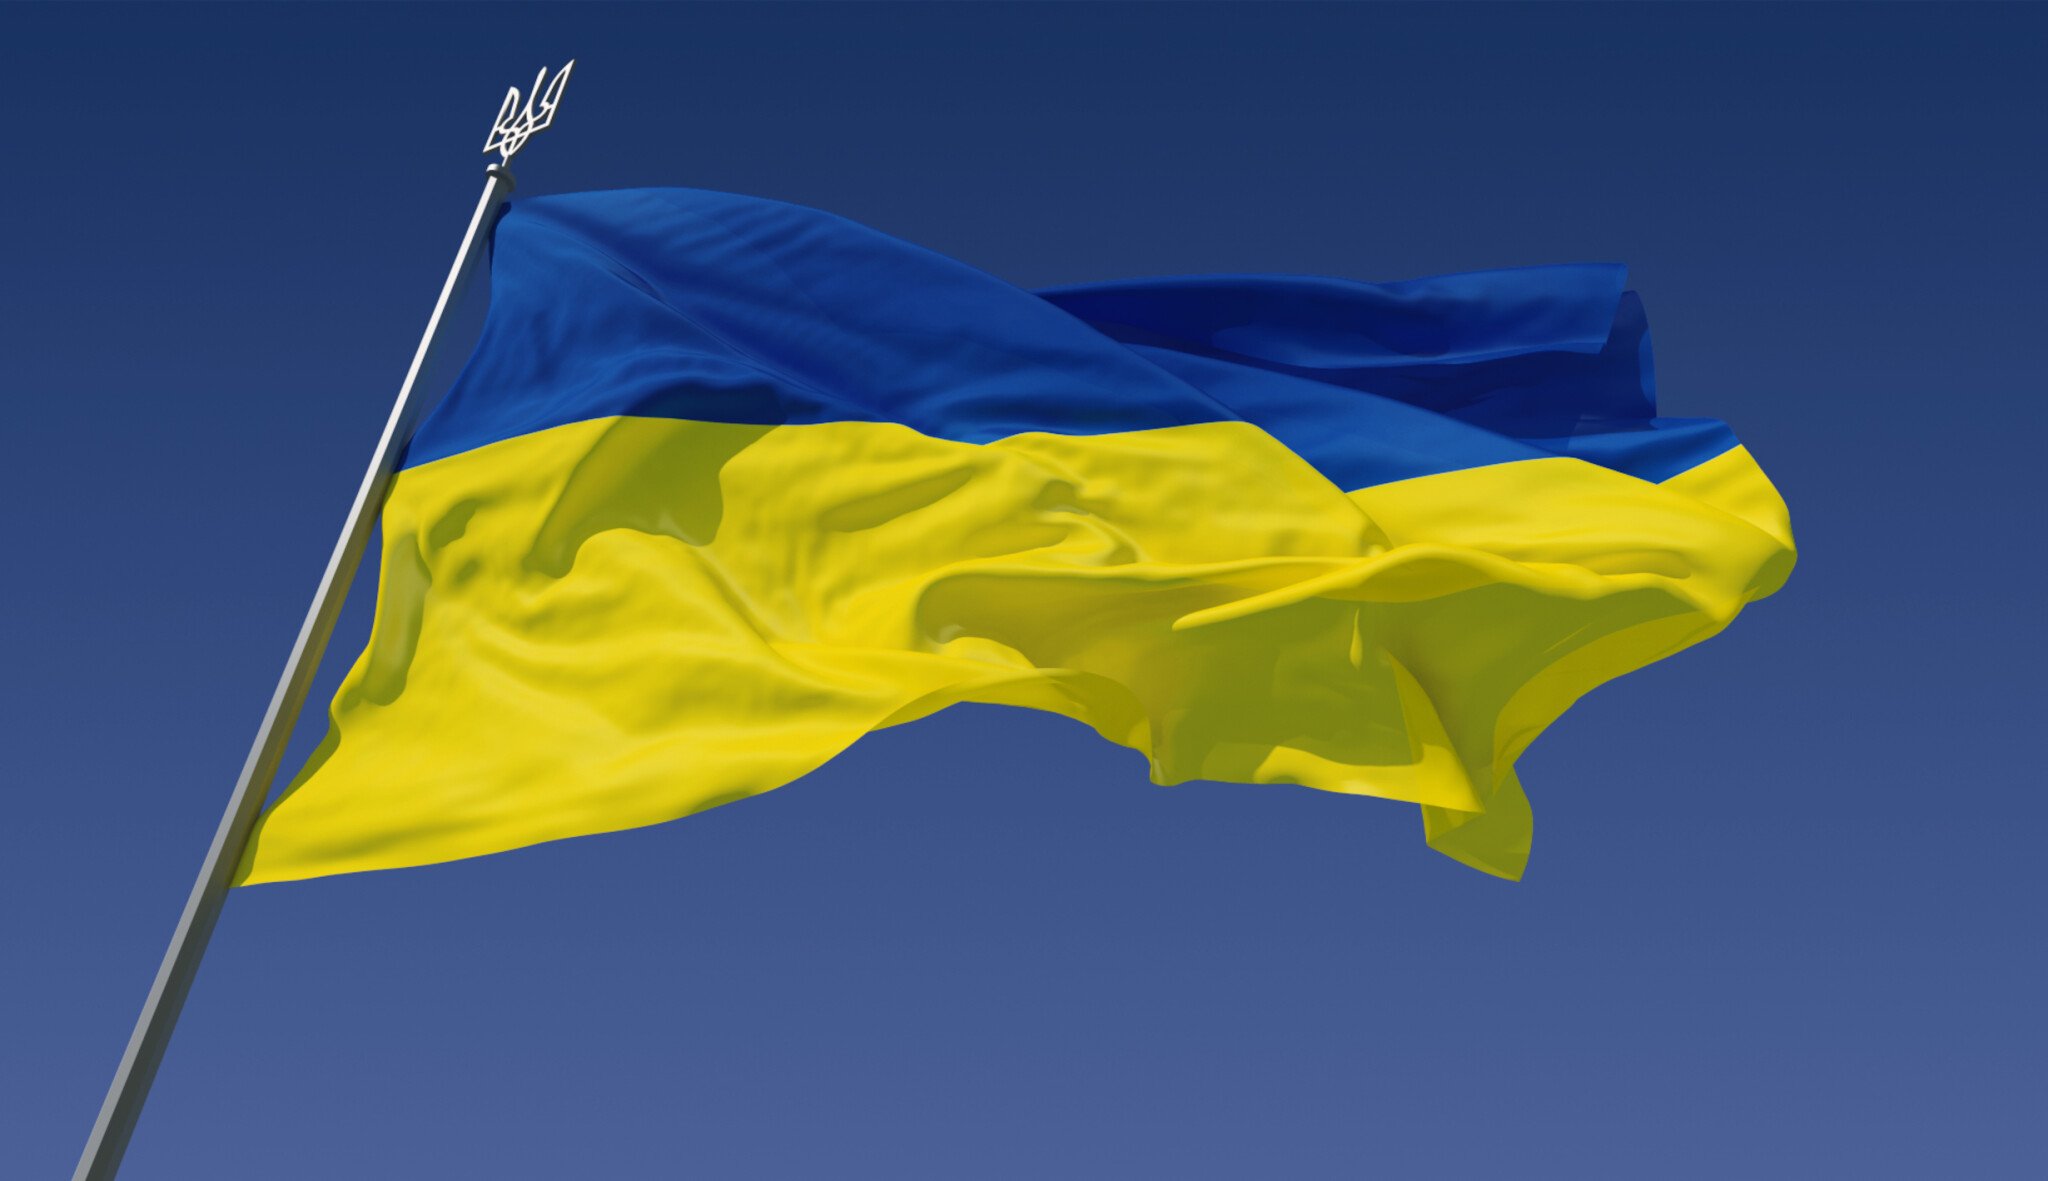 Válka na Ukrajině. Co v konfliktu přinesl uplynulý víkend?